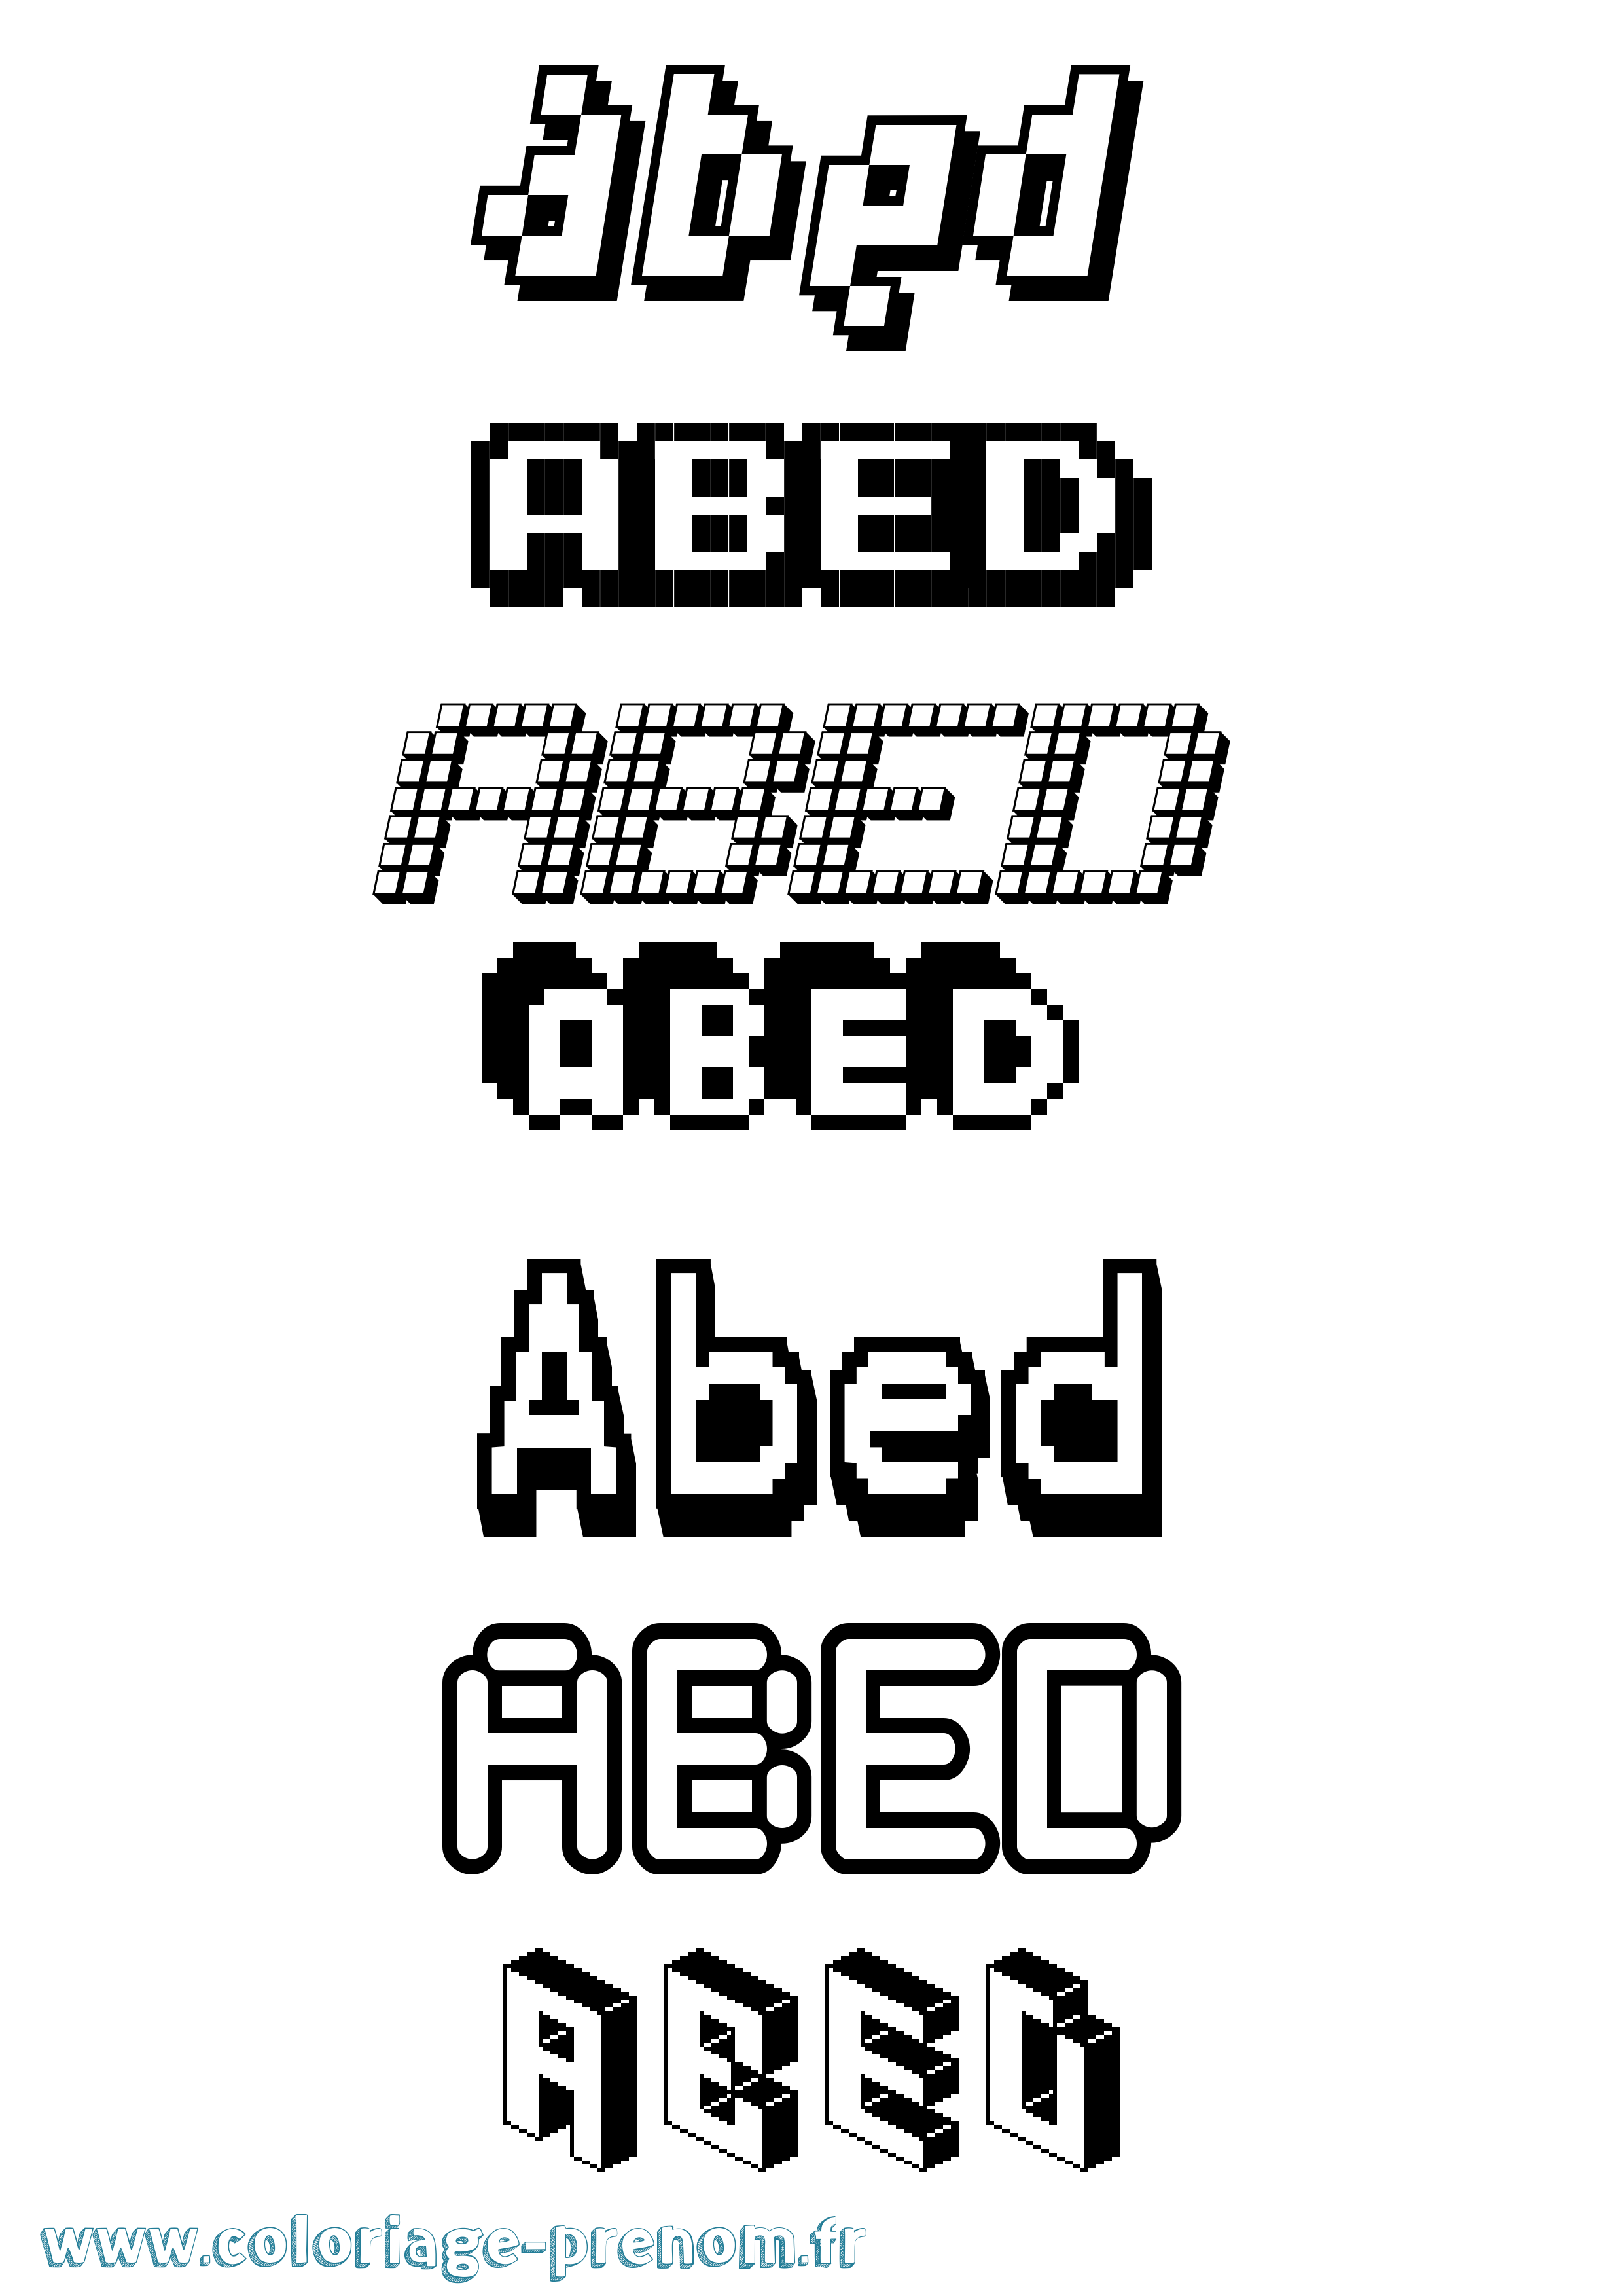 Coloriage prénom Abed Pixel